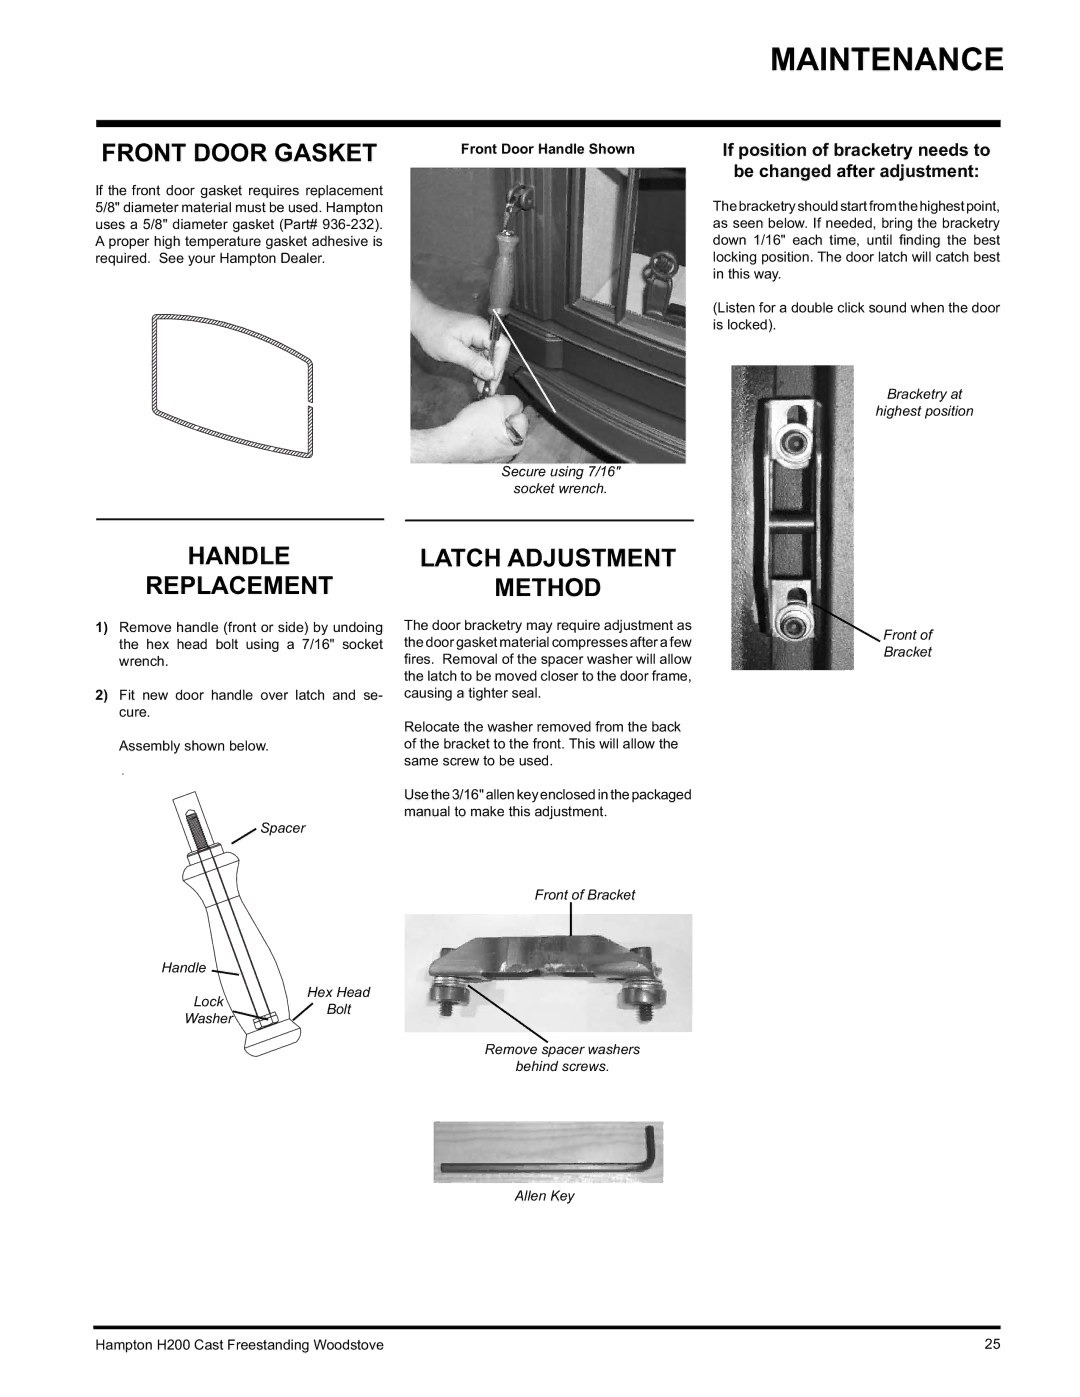 Hampton Direct H200 installation manual Front Door Gasket, Handle 